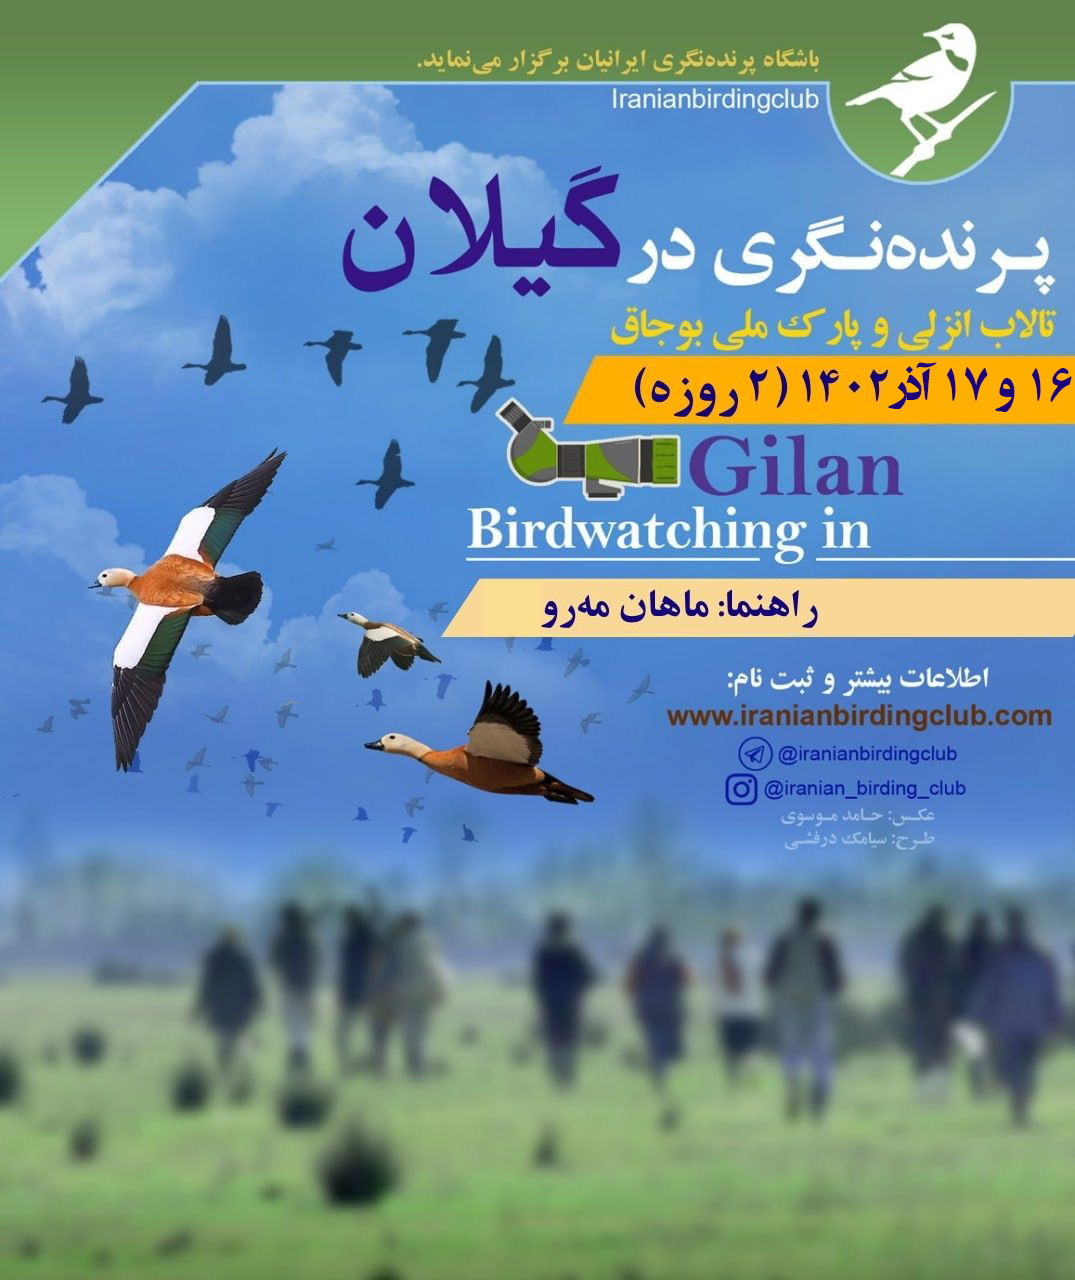 Bujagh Iranian Birding Club